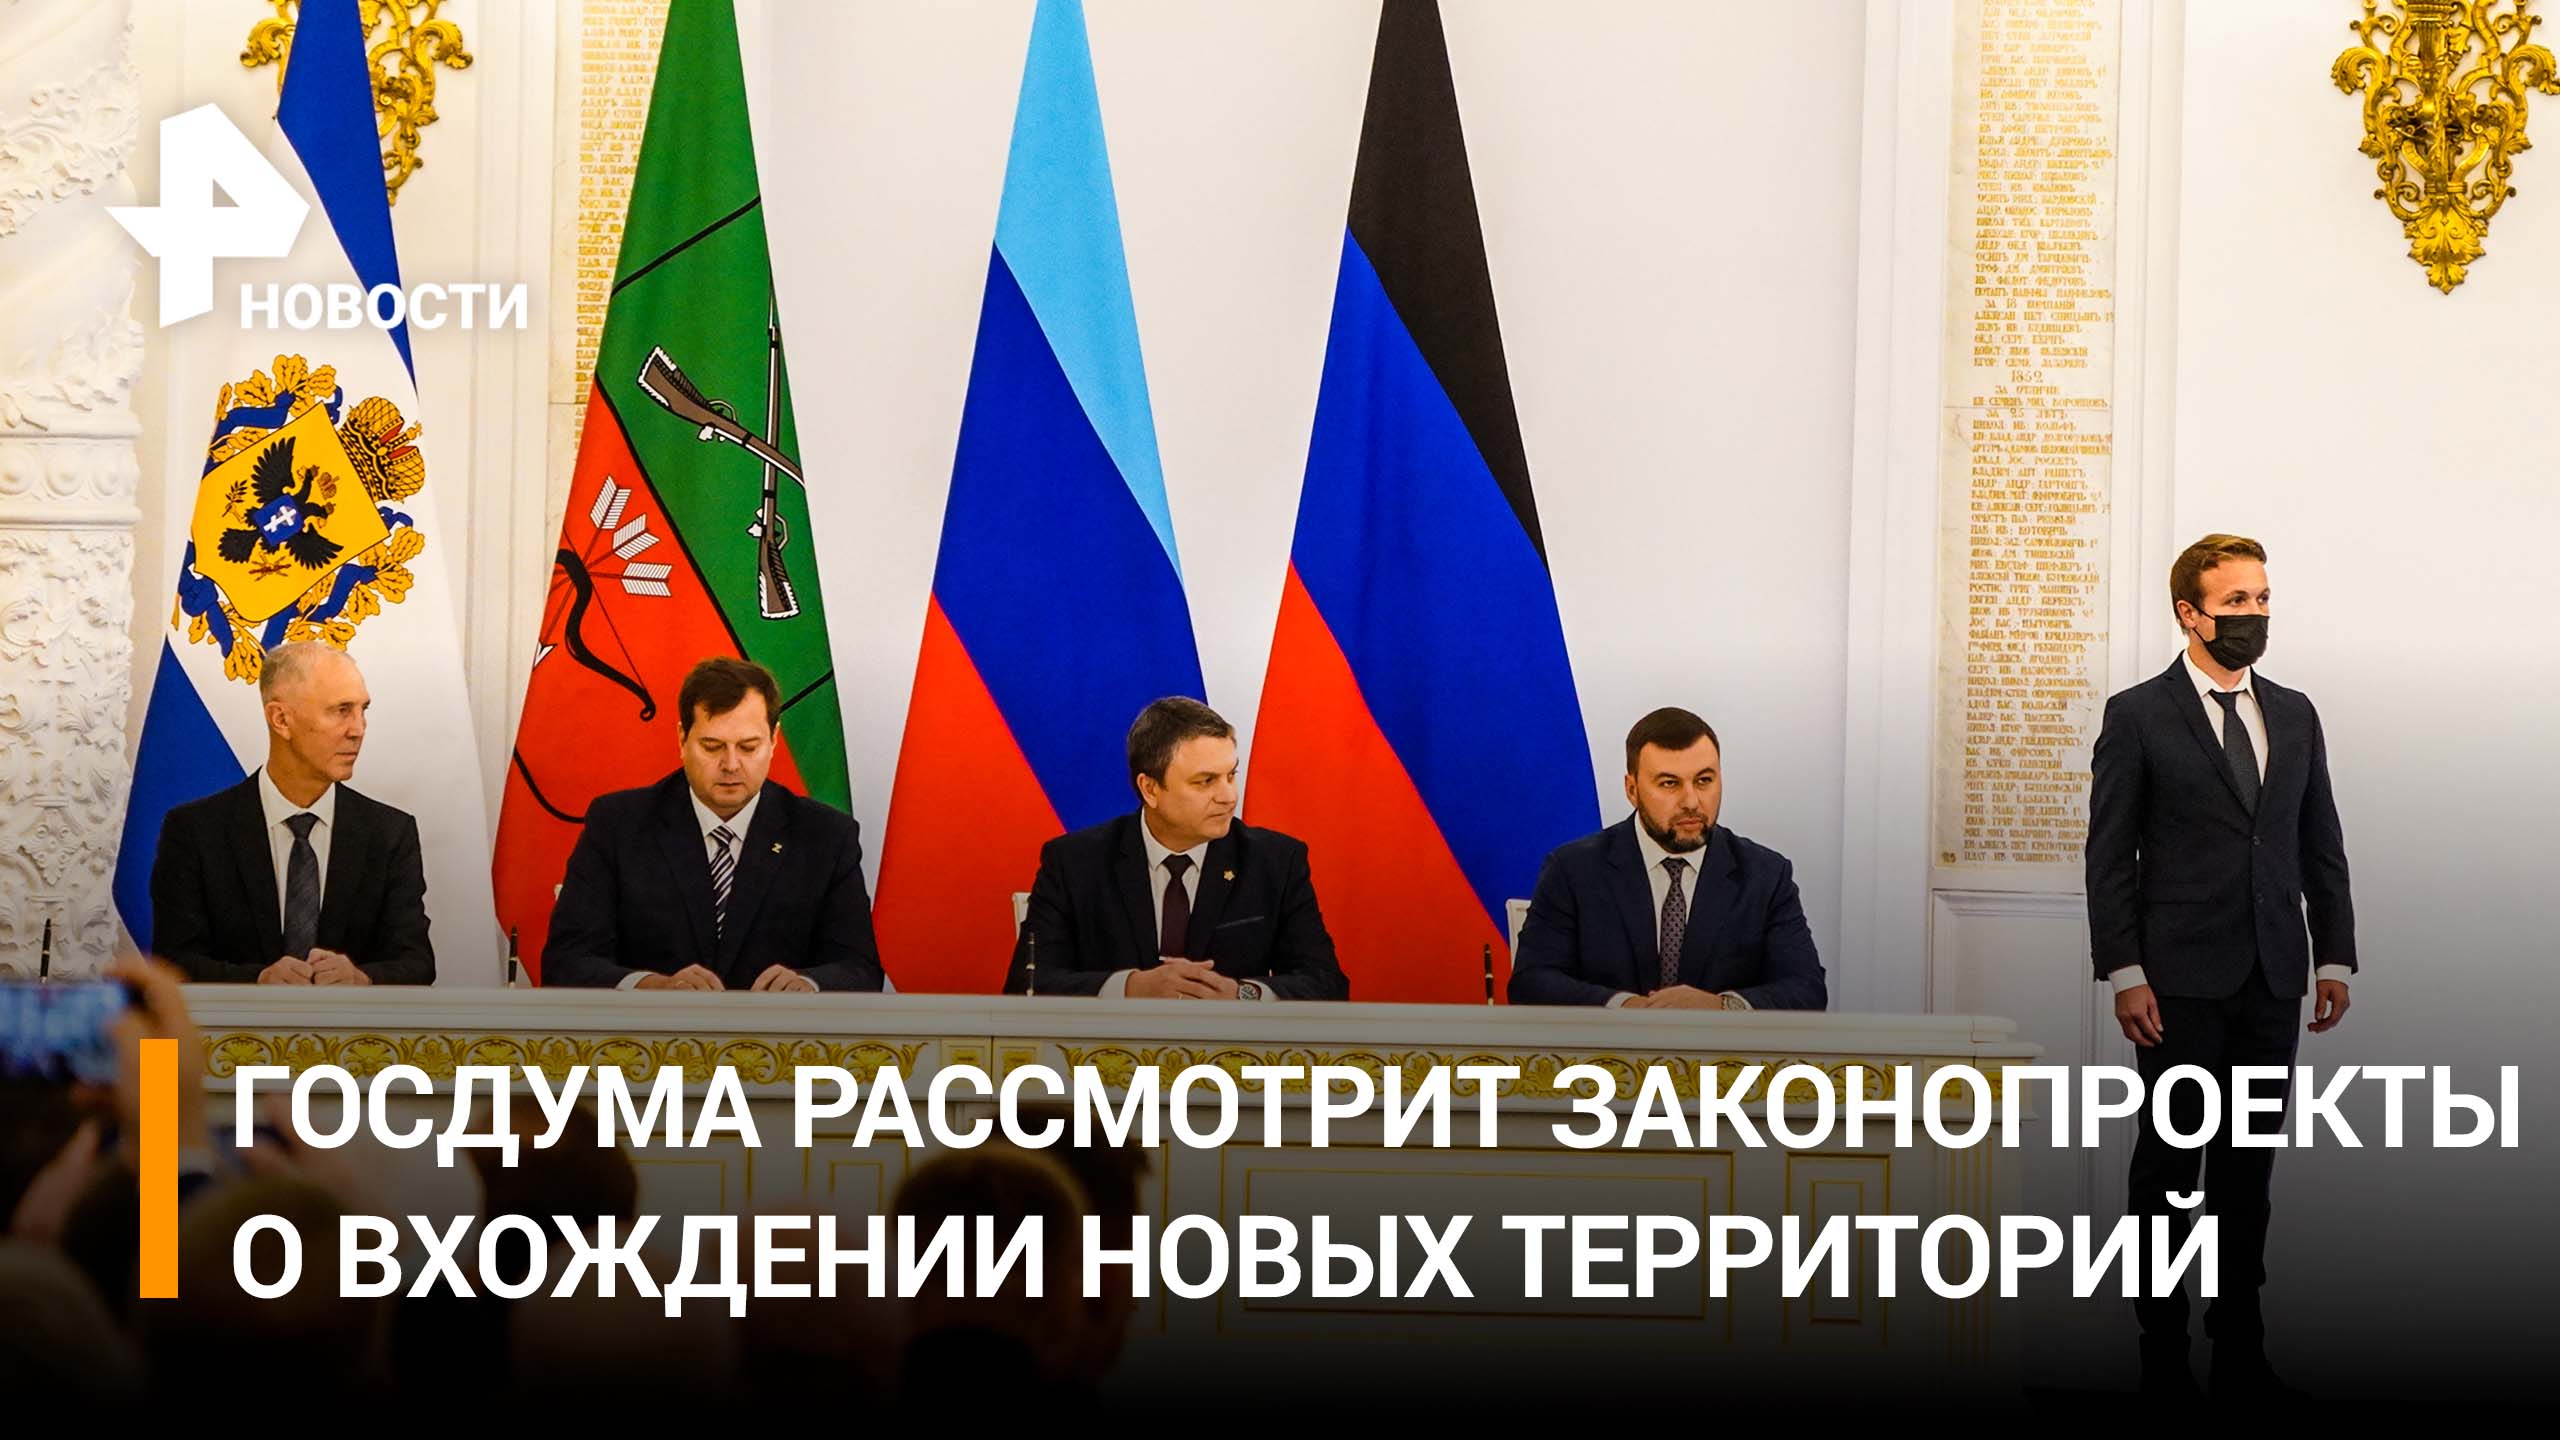 Сегодня Госдума приступит к ратификации договоров о вхождении новых регионов / РЕН Новости